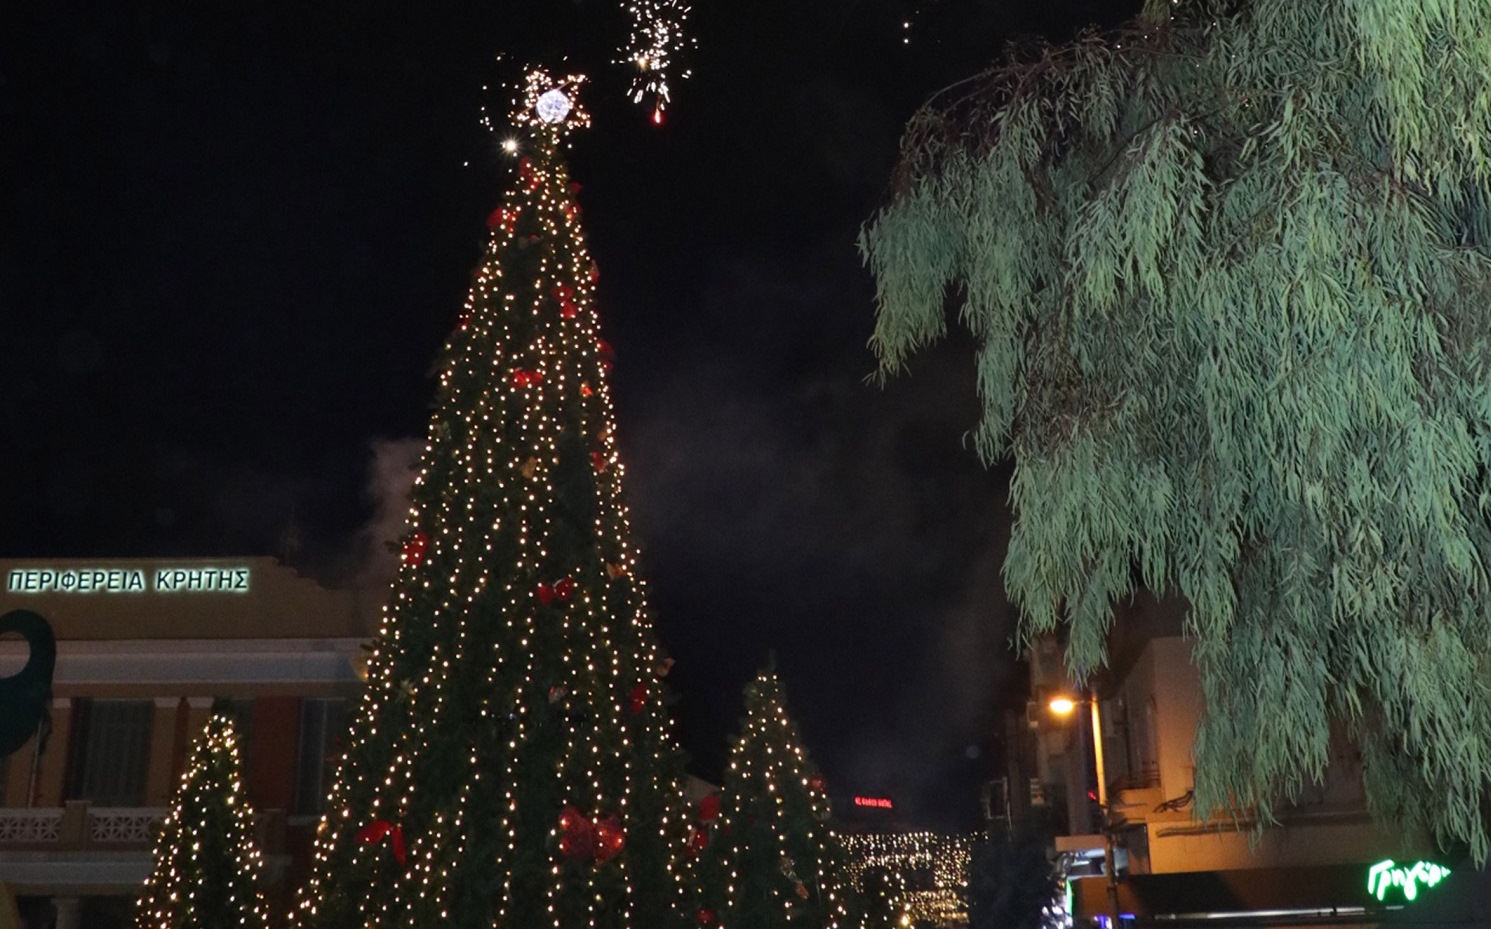 Οι Χριστουγεννιάτικες εκδηλώσεις στο Ηράκλειο την Τρίτη 12 Δεκεμβρίου 